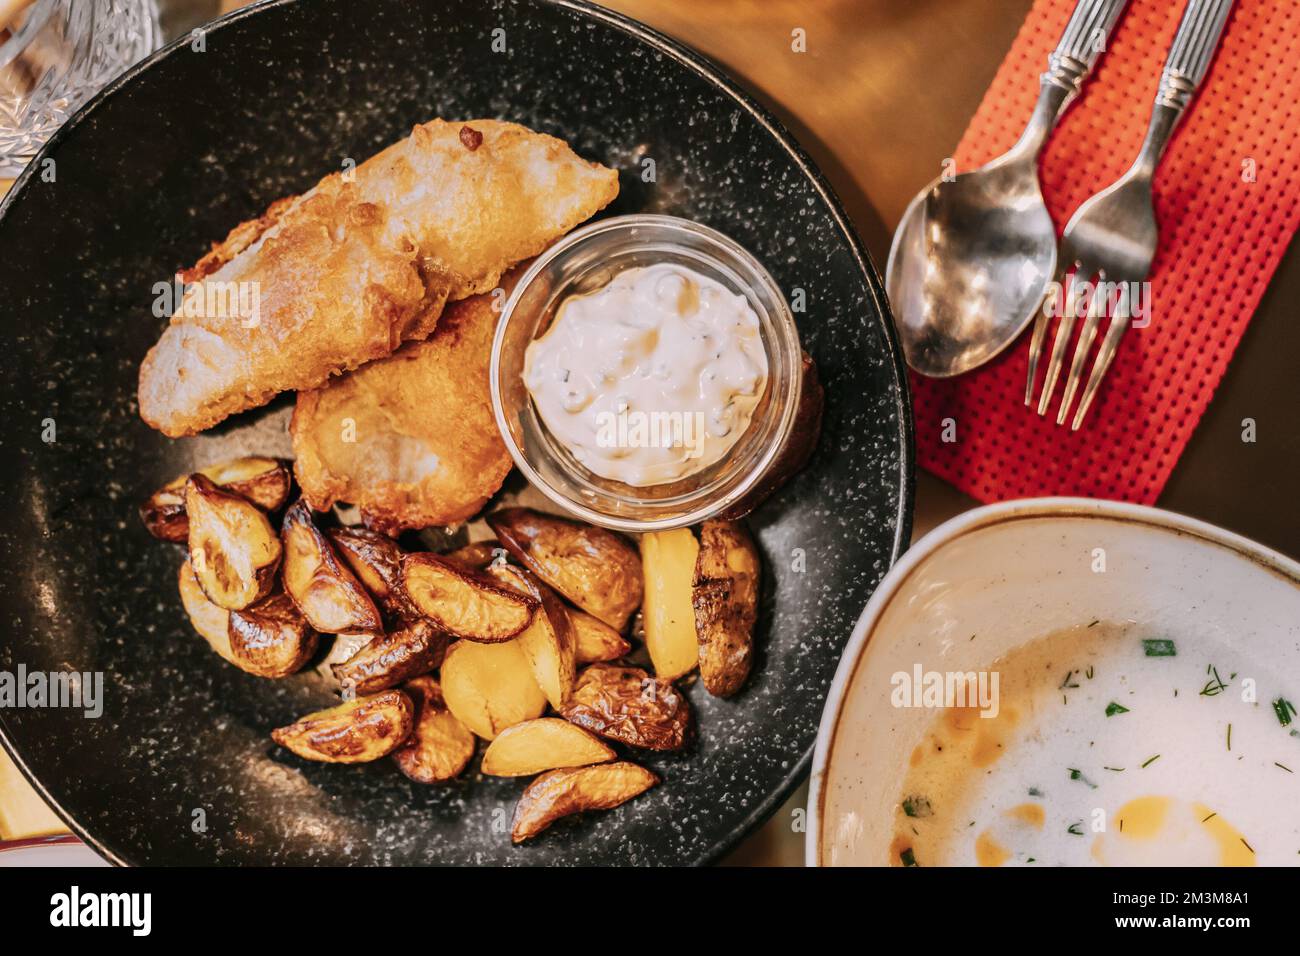 Soupe : Cullen - soupe écossaise épaisse avec poisson blanc fumé et hors-d'œuvre : chips de poisson, sauce tartare. Cuisine traditionnelle de l'Ecosse Banque D'Images